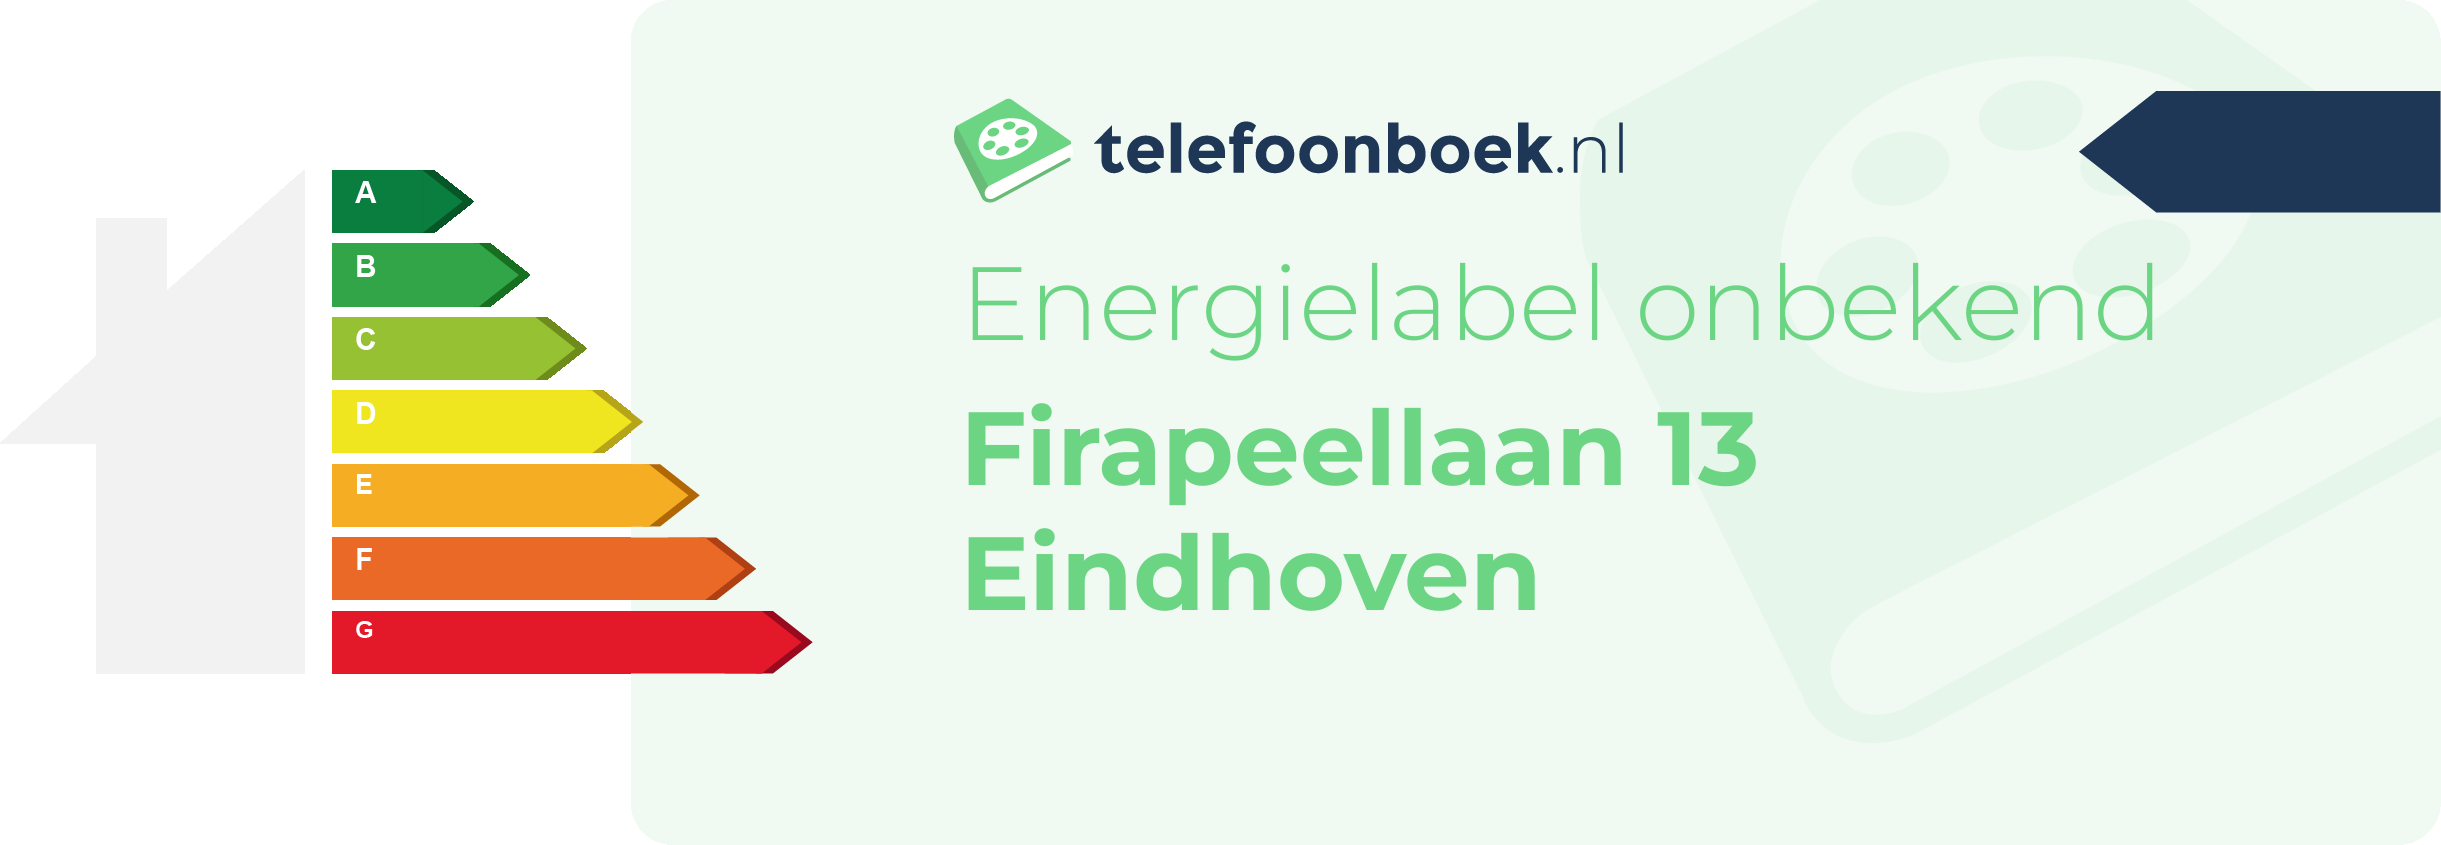 Energielabel Firapeellaan 13 Eindhoven